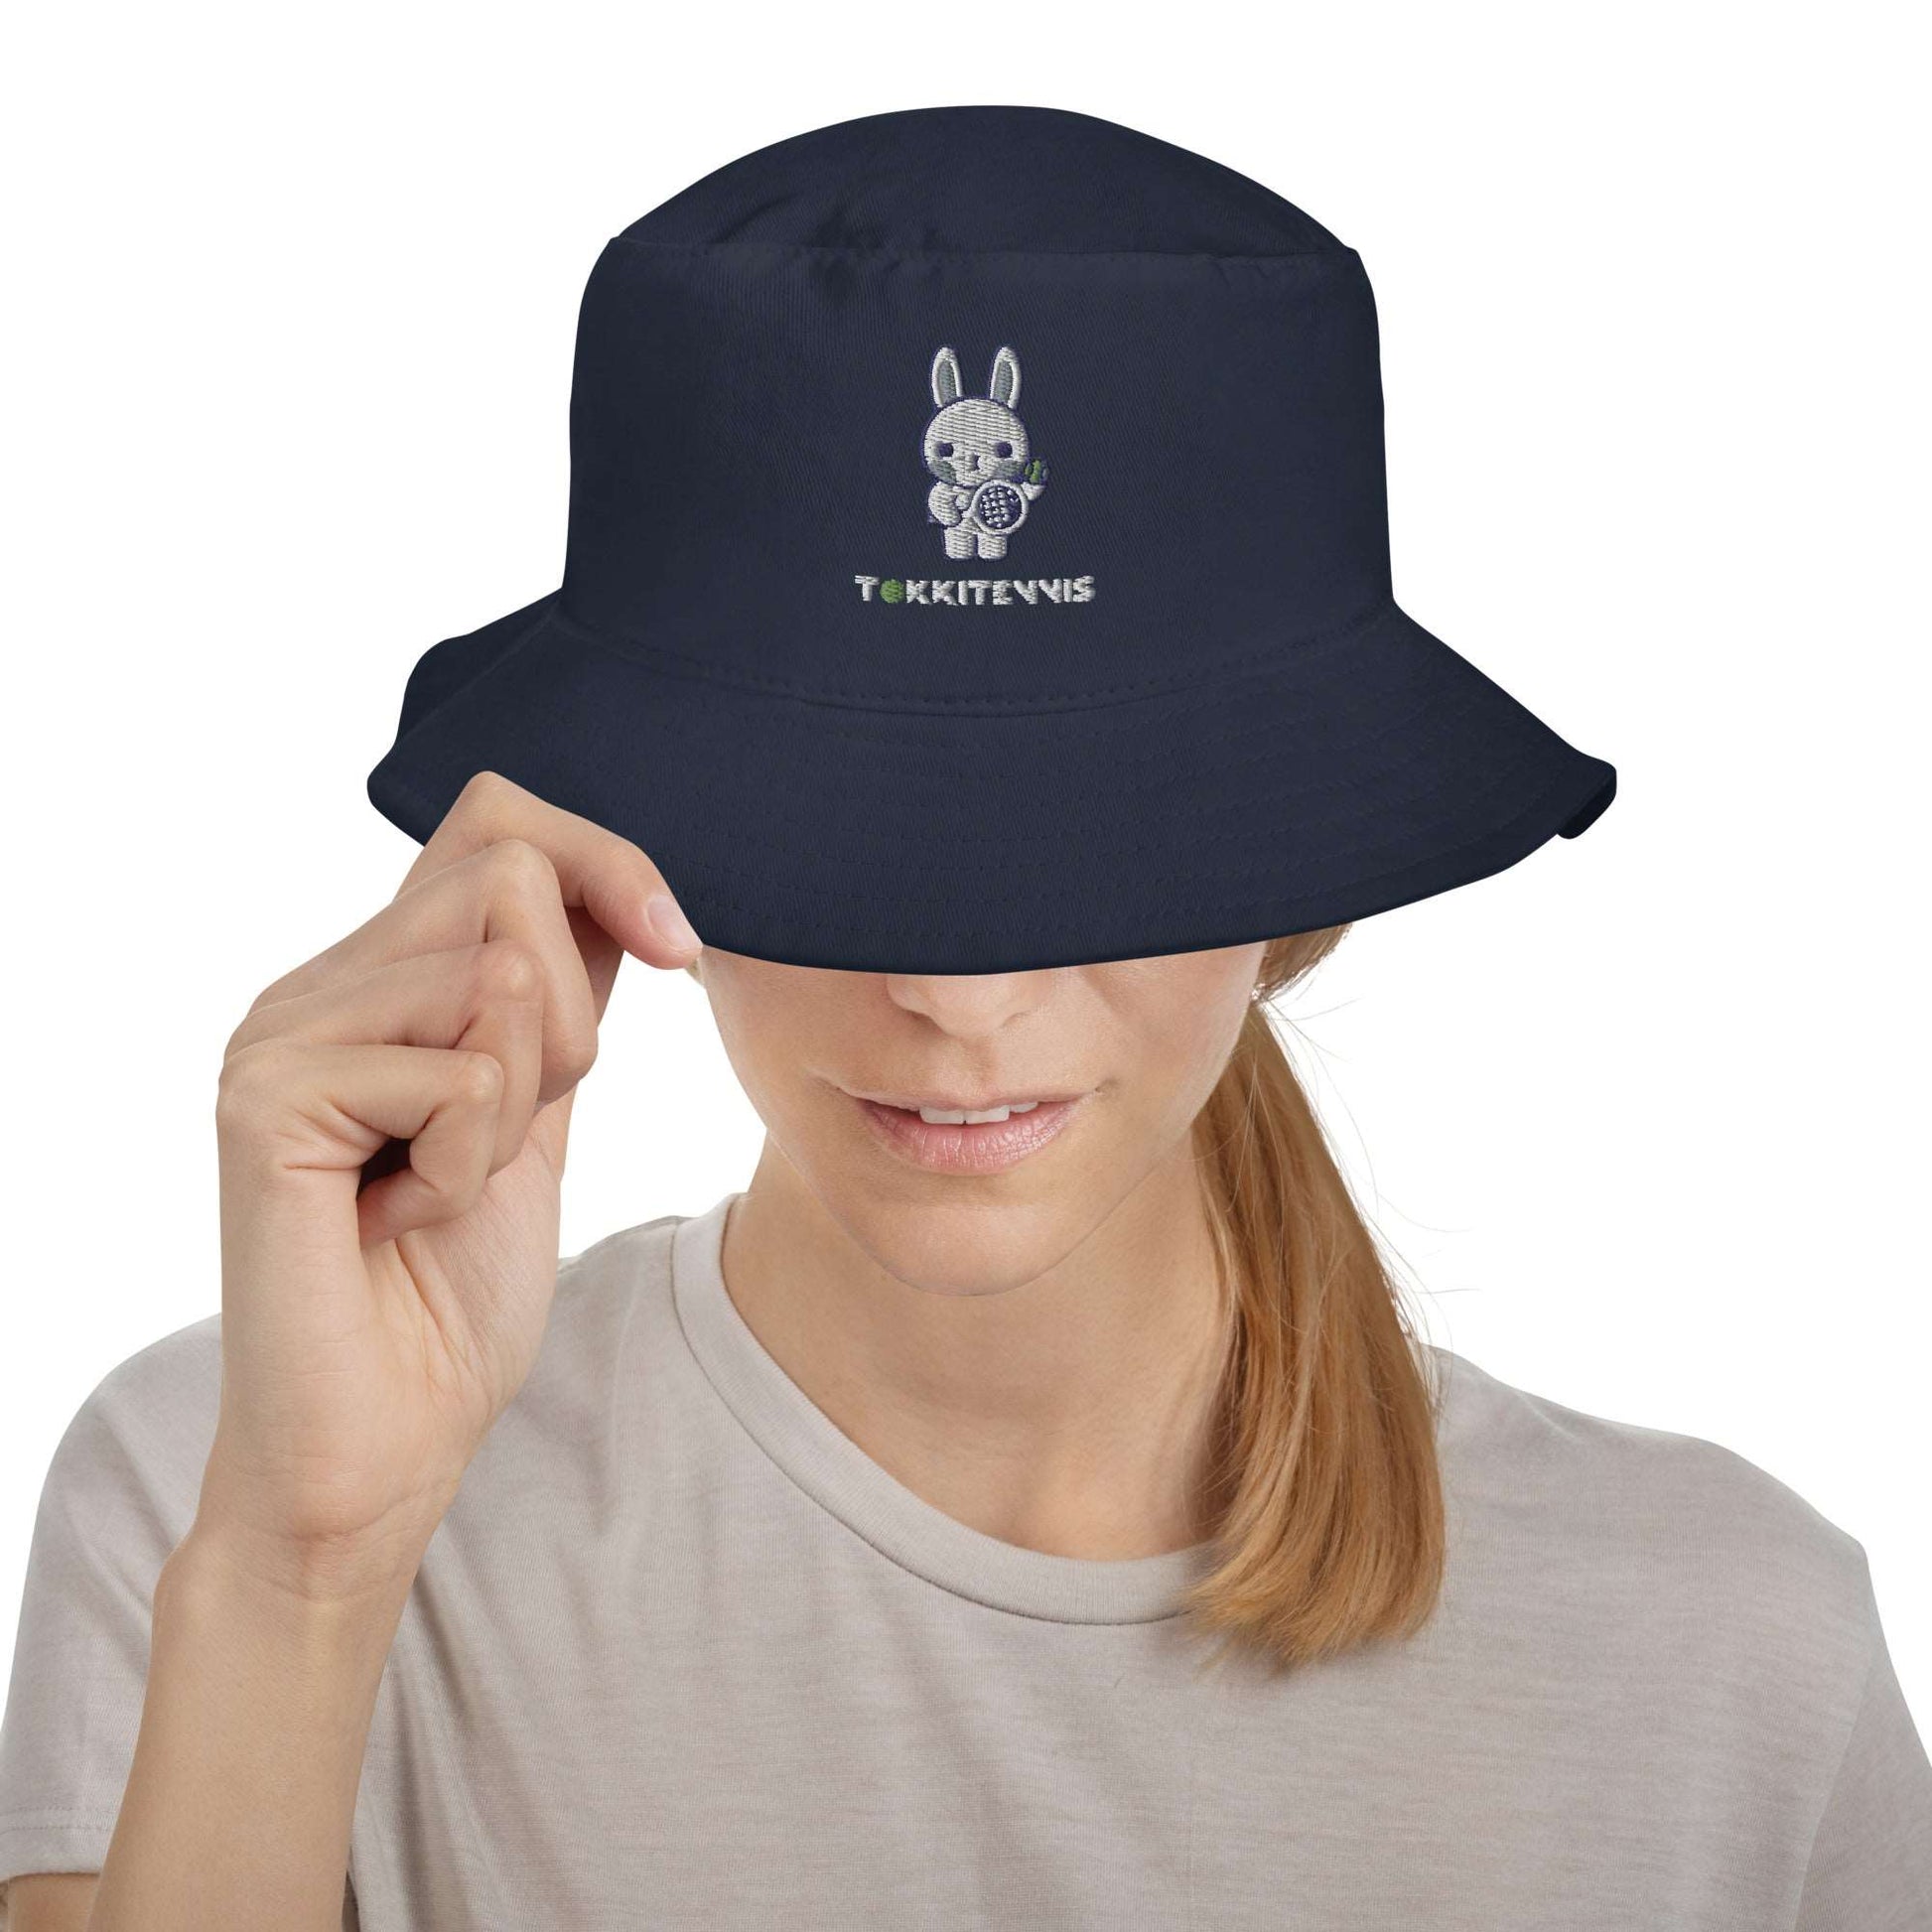 Emma Bucket Hat - Black or Navy - TOKKITENNIS